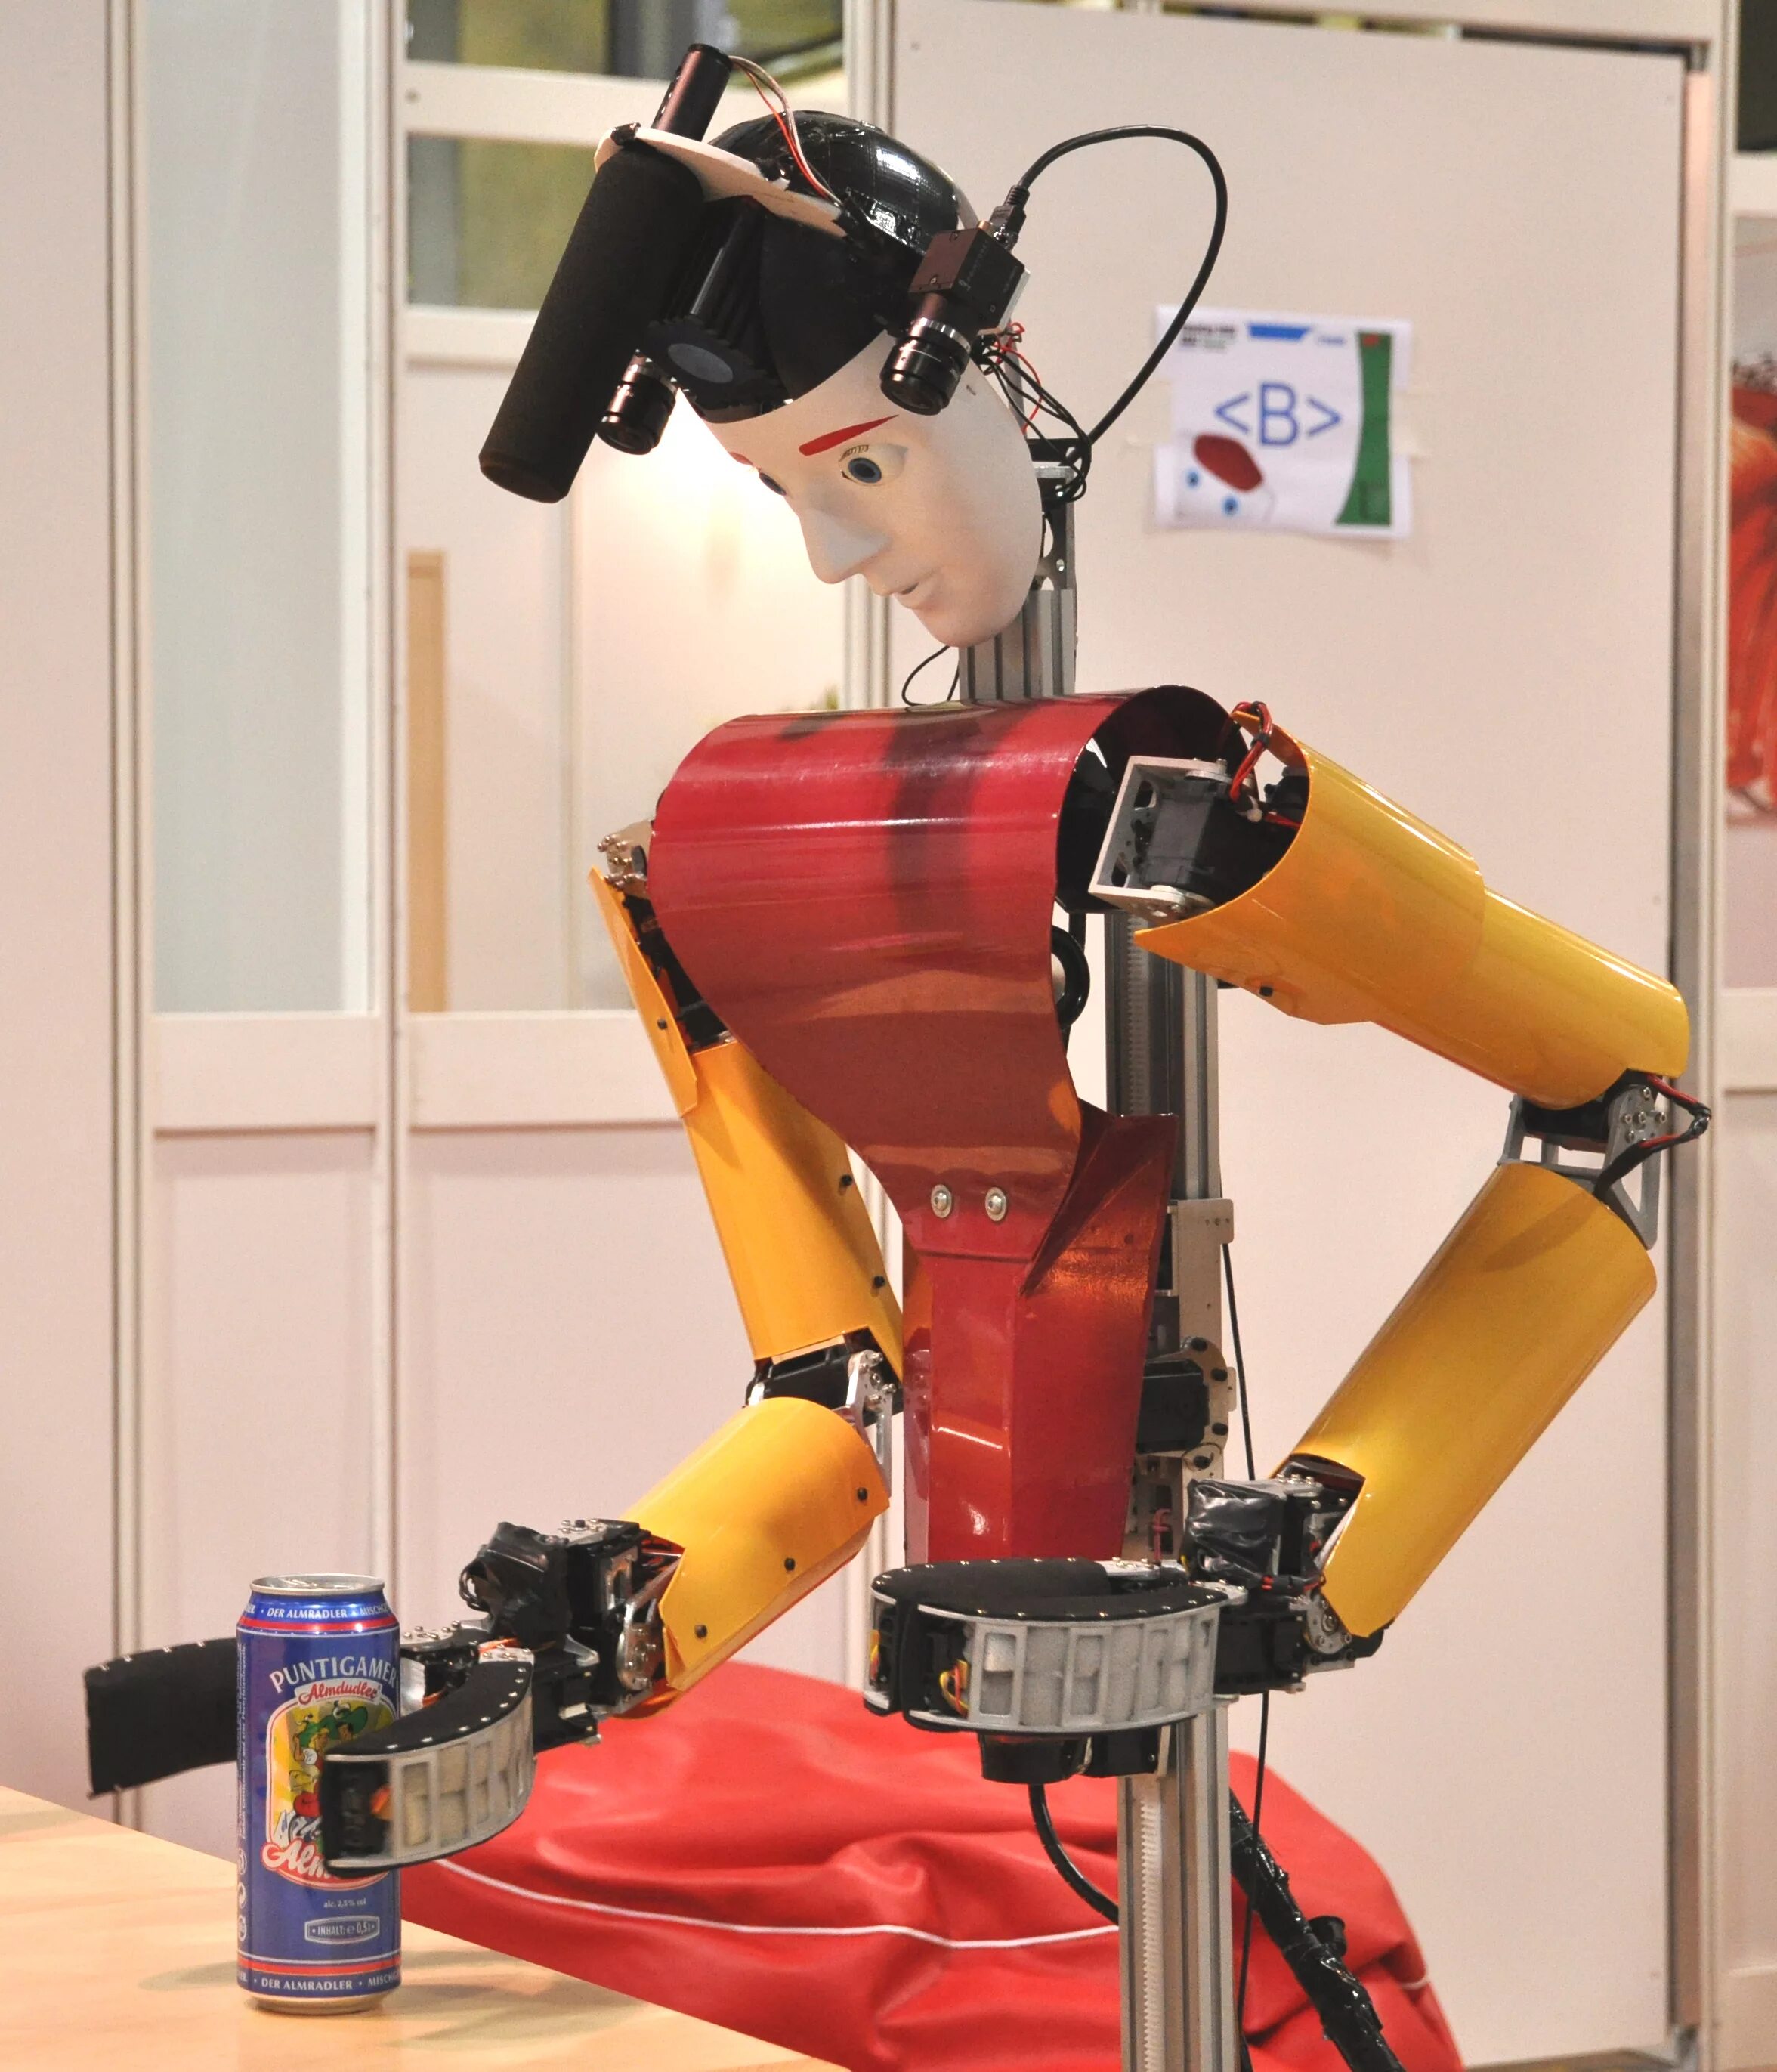 Покажи видео про роботов. Робот. Видеоролики про роботов. Робот на роликах. Облачная робототехника.